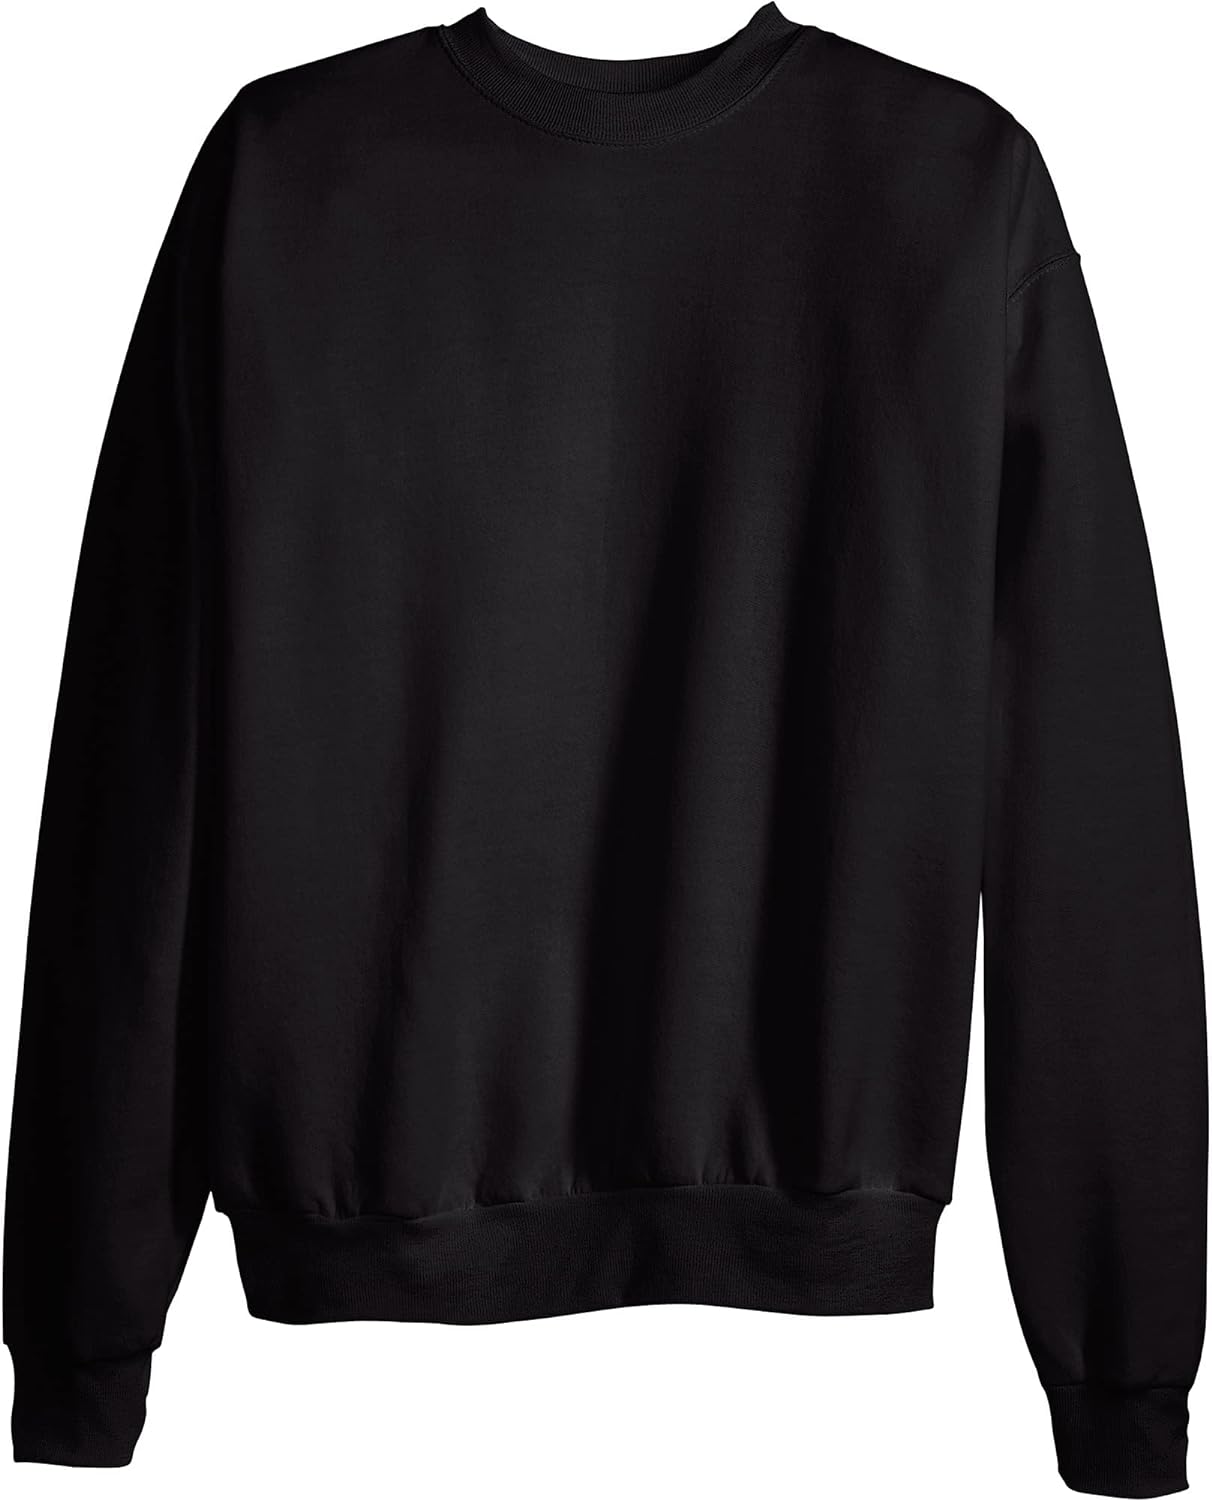 Hanes Men's Ecosmart Fleece Sweatshirt, Cotton-blend Pullover, Crewneck Sweatshirt for Men (1 Or 2 Pack)